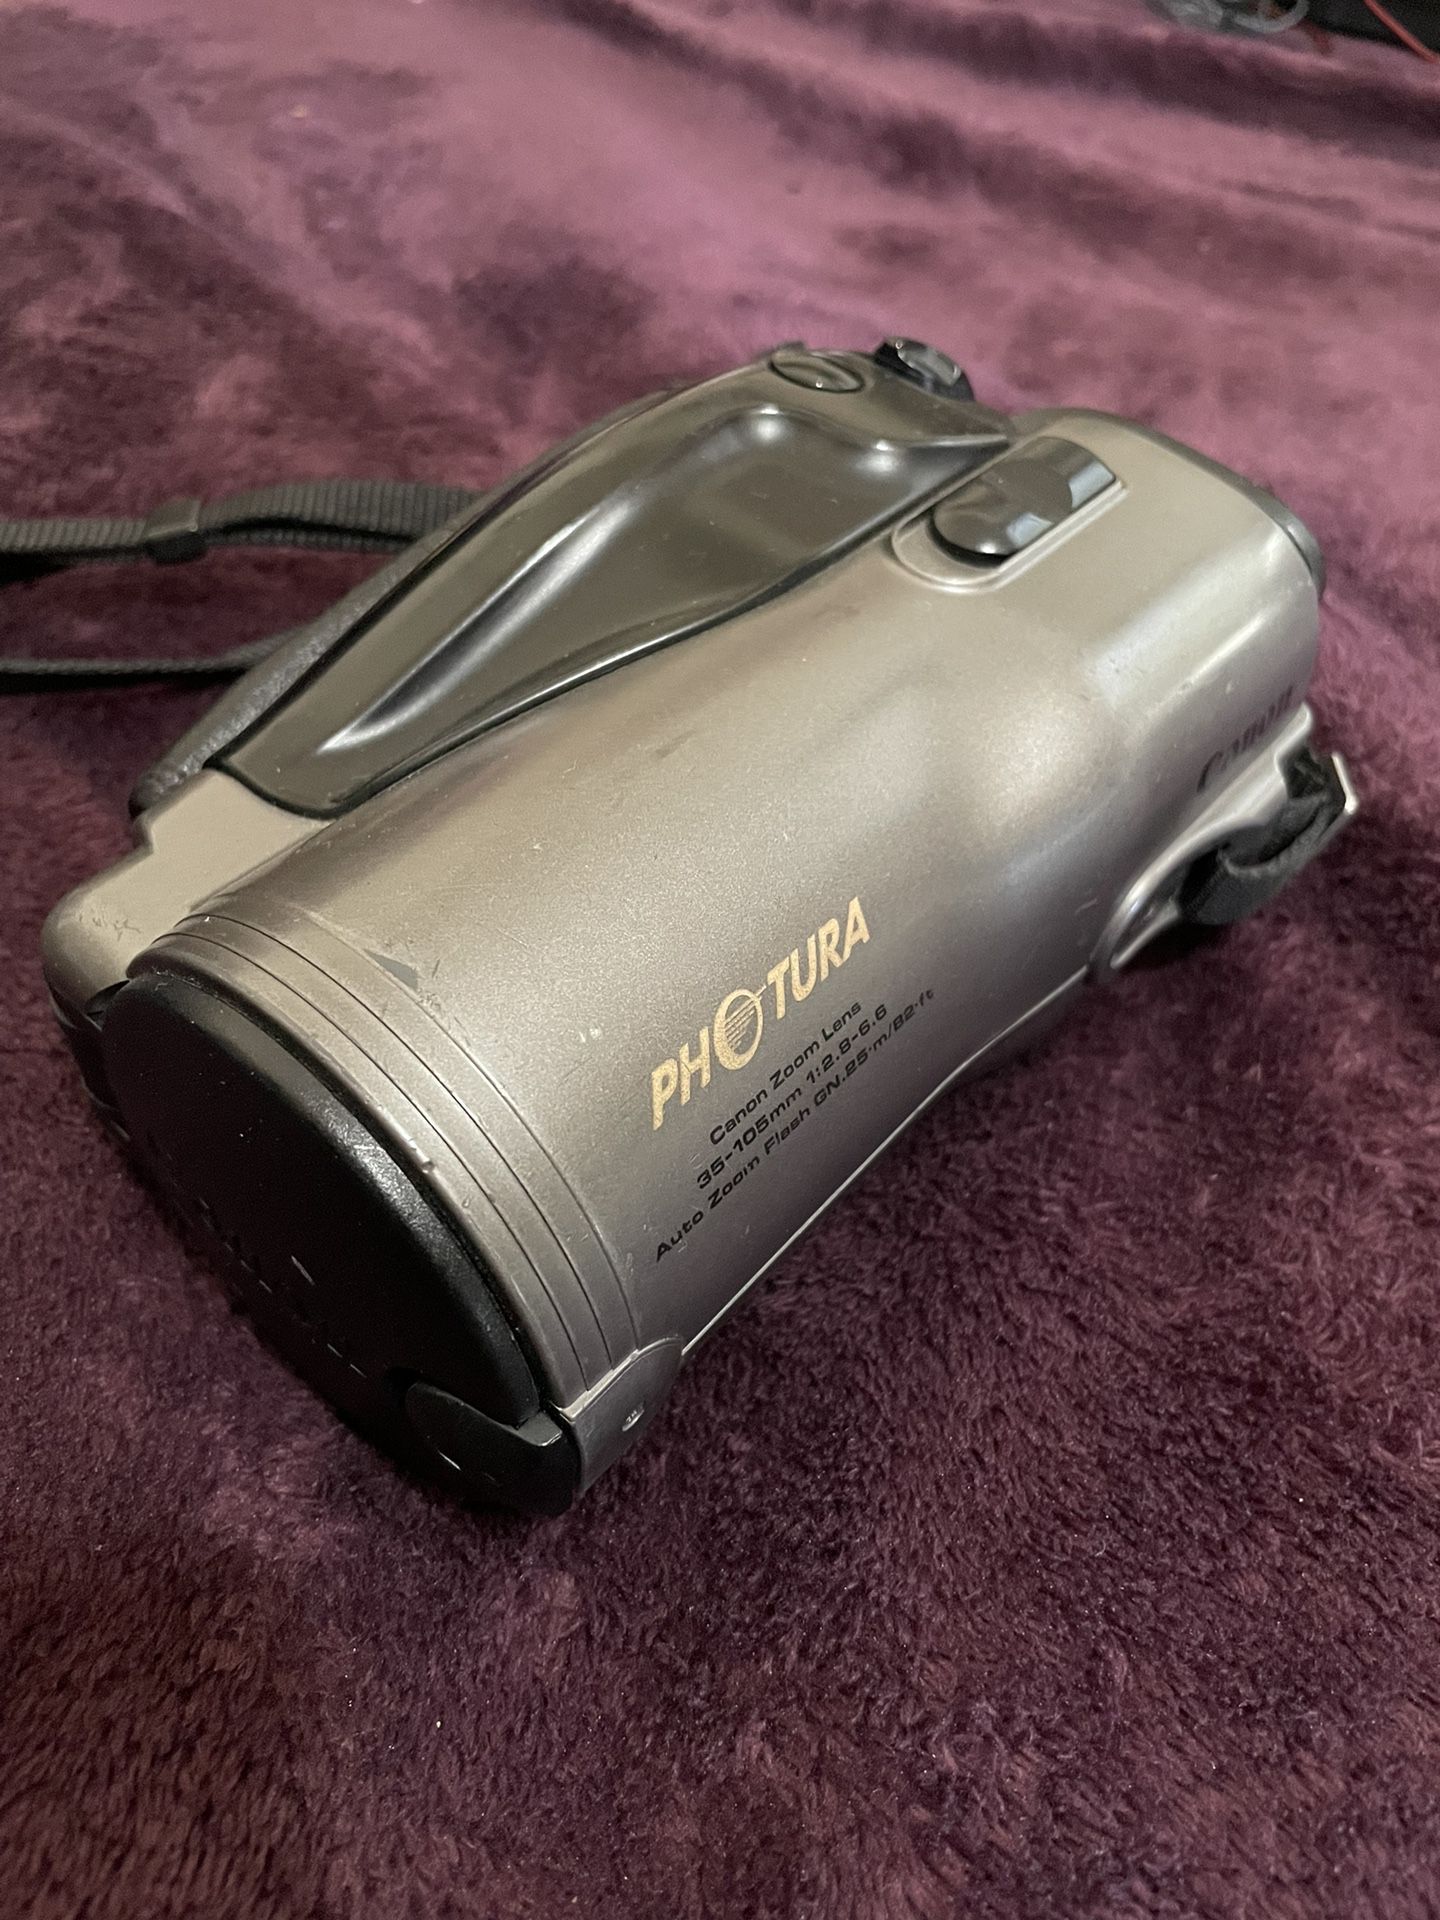 Canon Photura 35mm Film Camera 